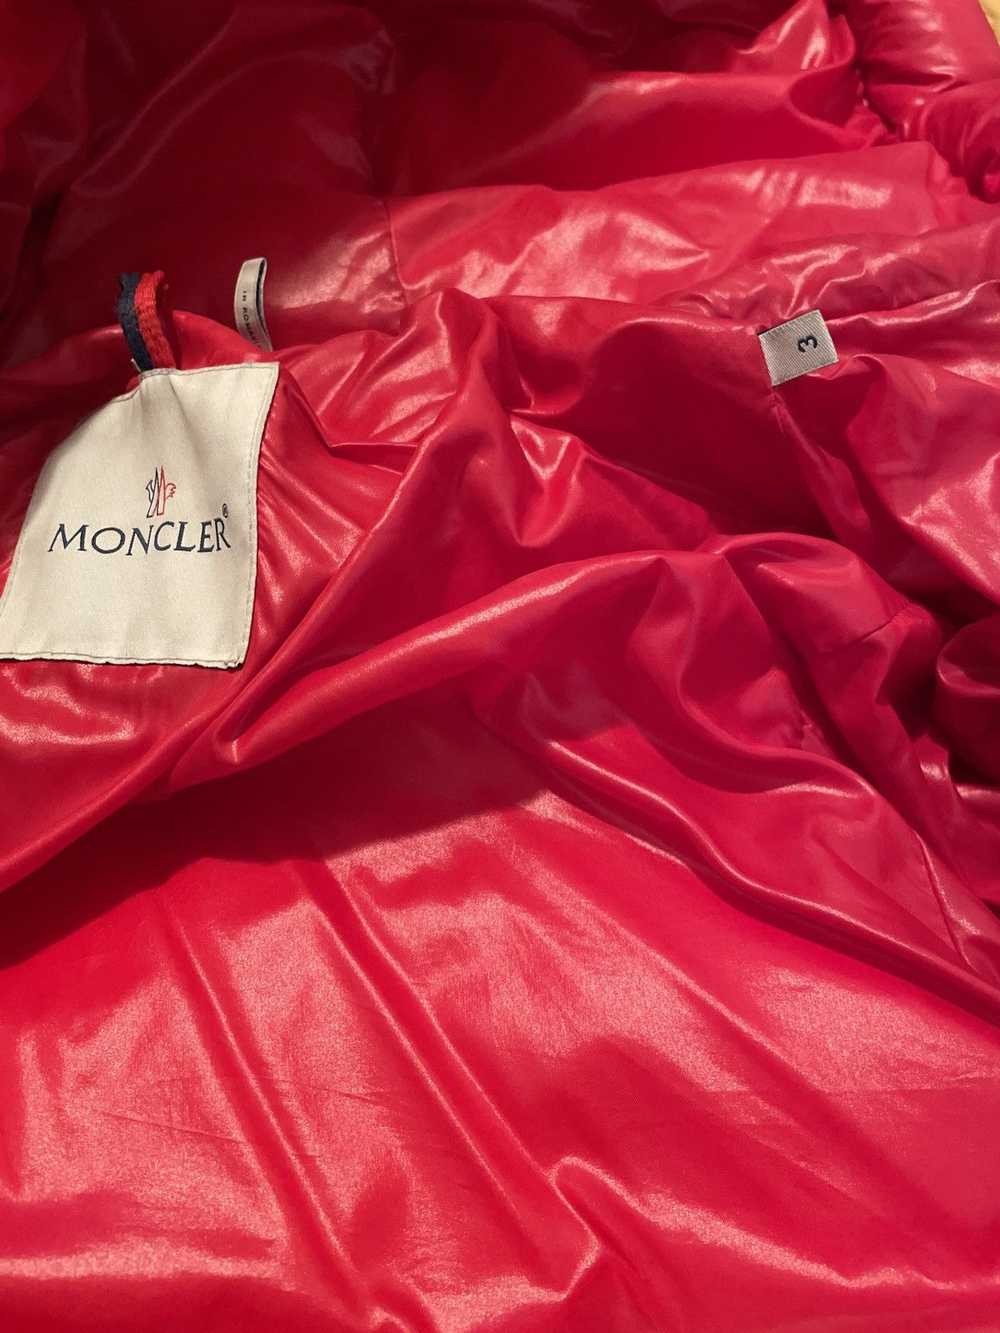 Moncler Moncler Maya Short Down Jacket (Men’s) - image 3